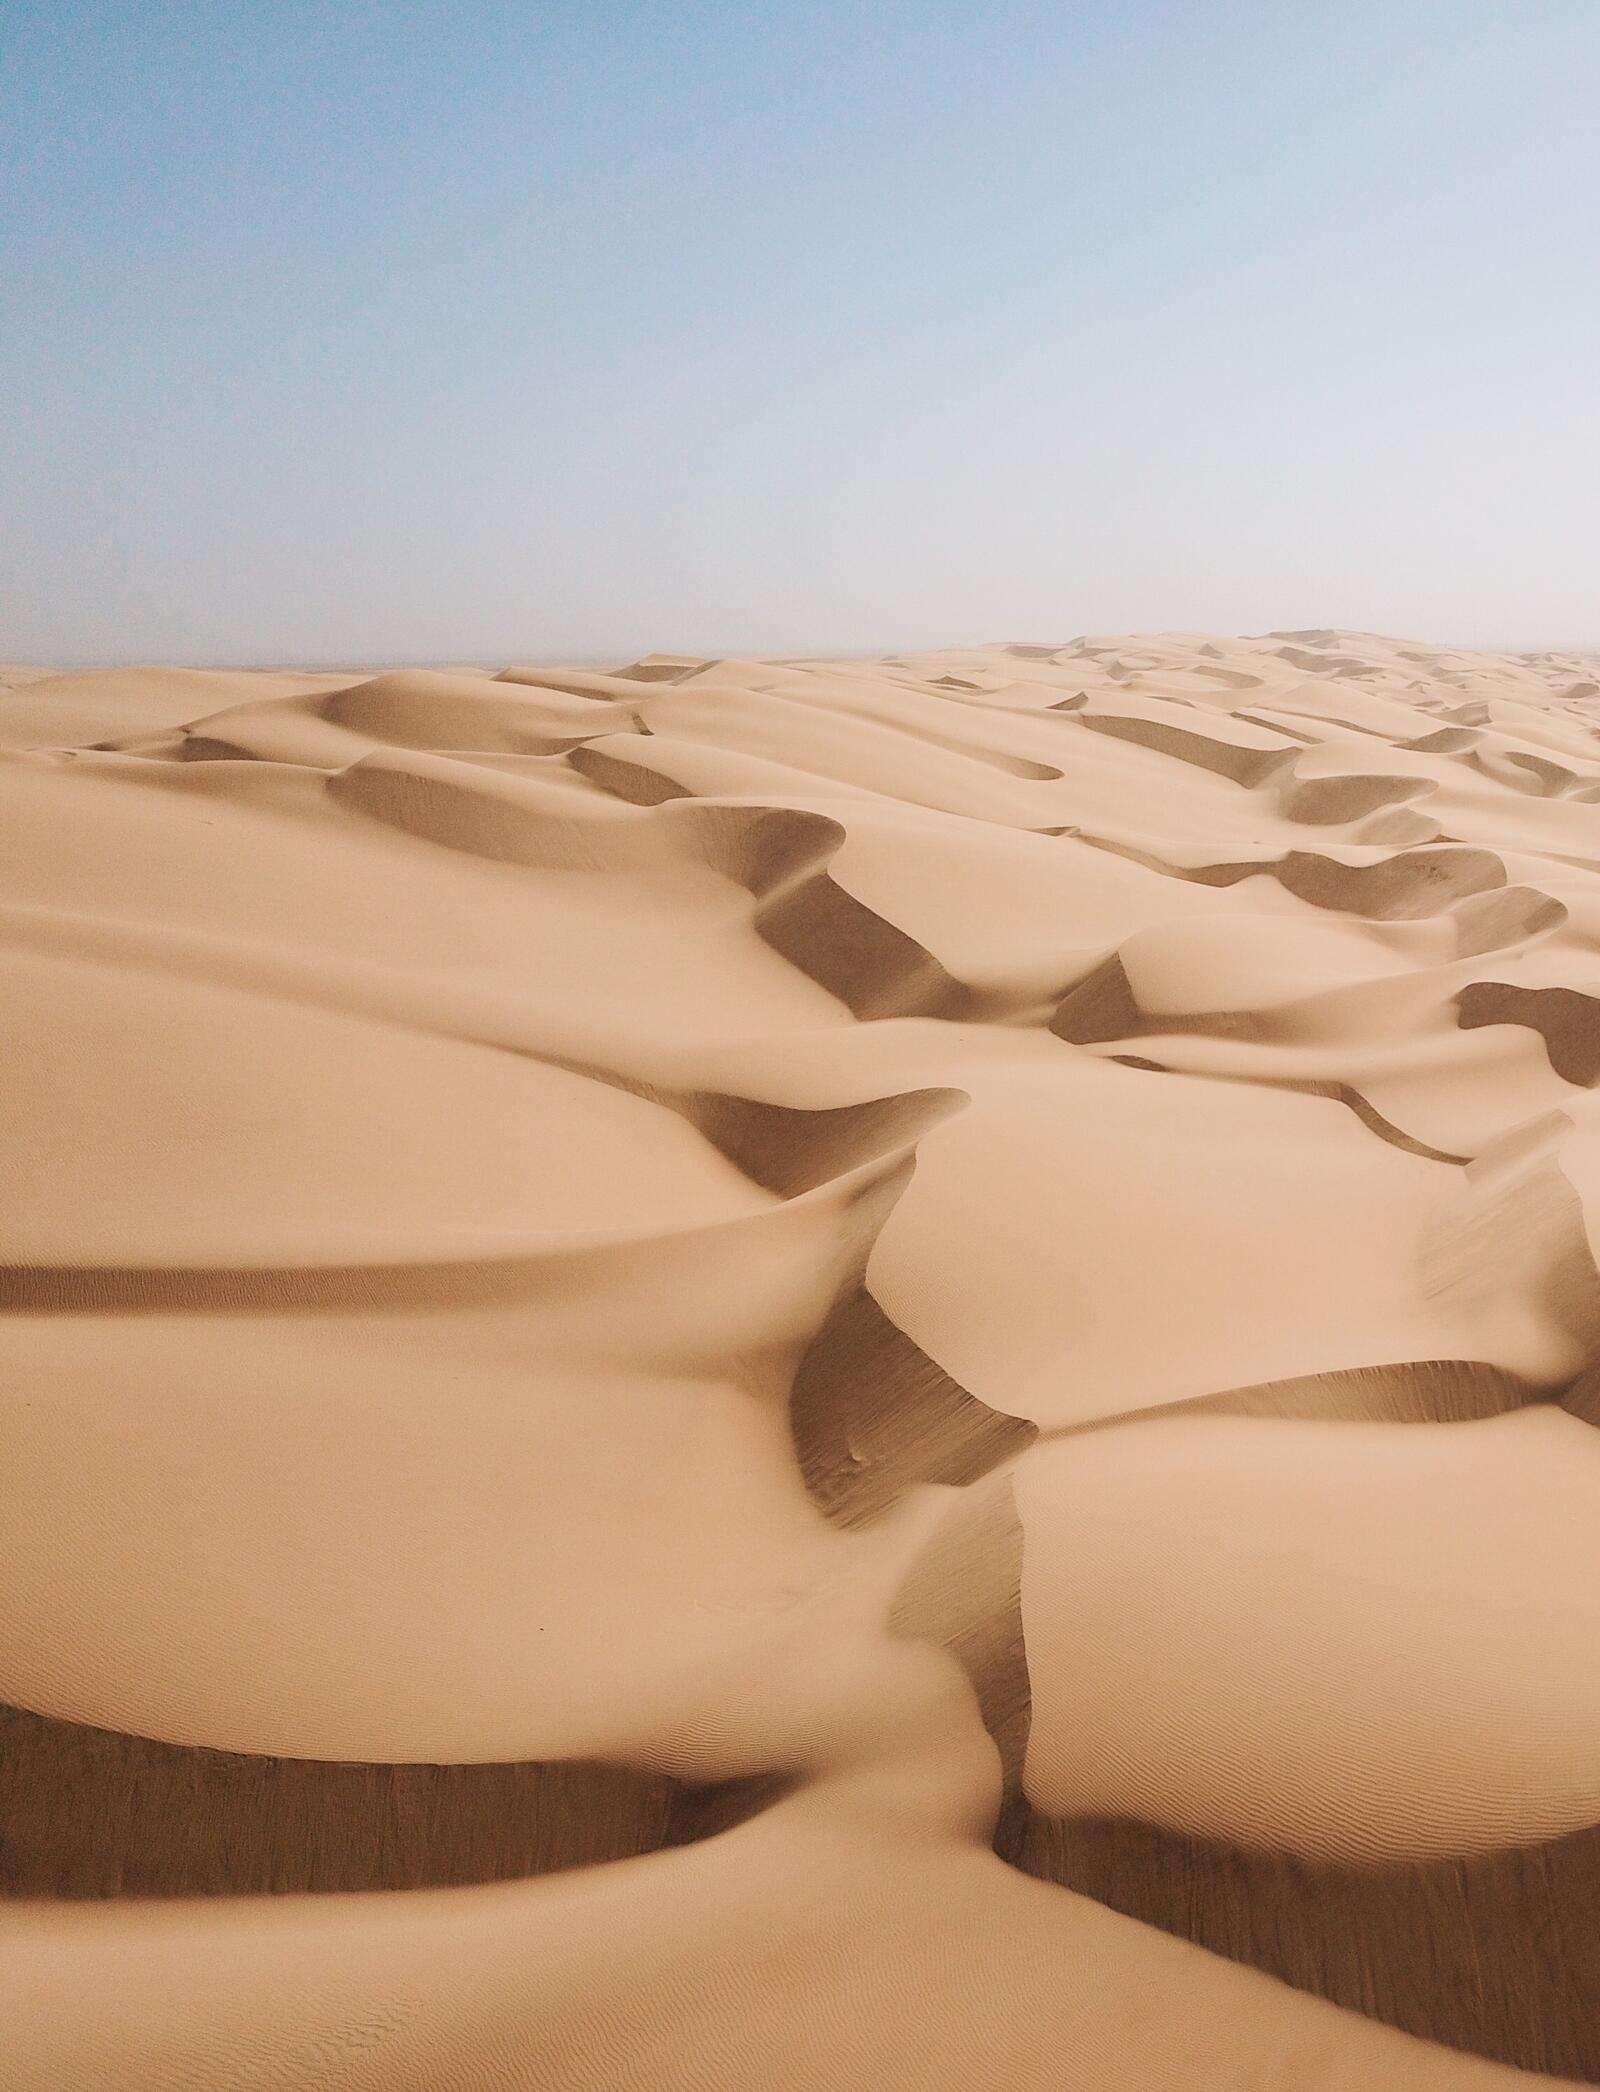 Wallpapers landscapes sand sand dune on the desktop